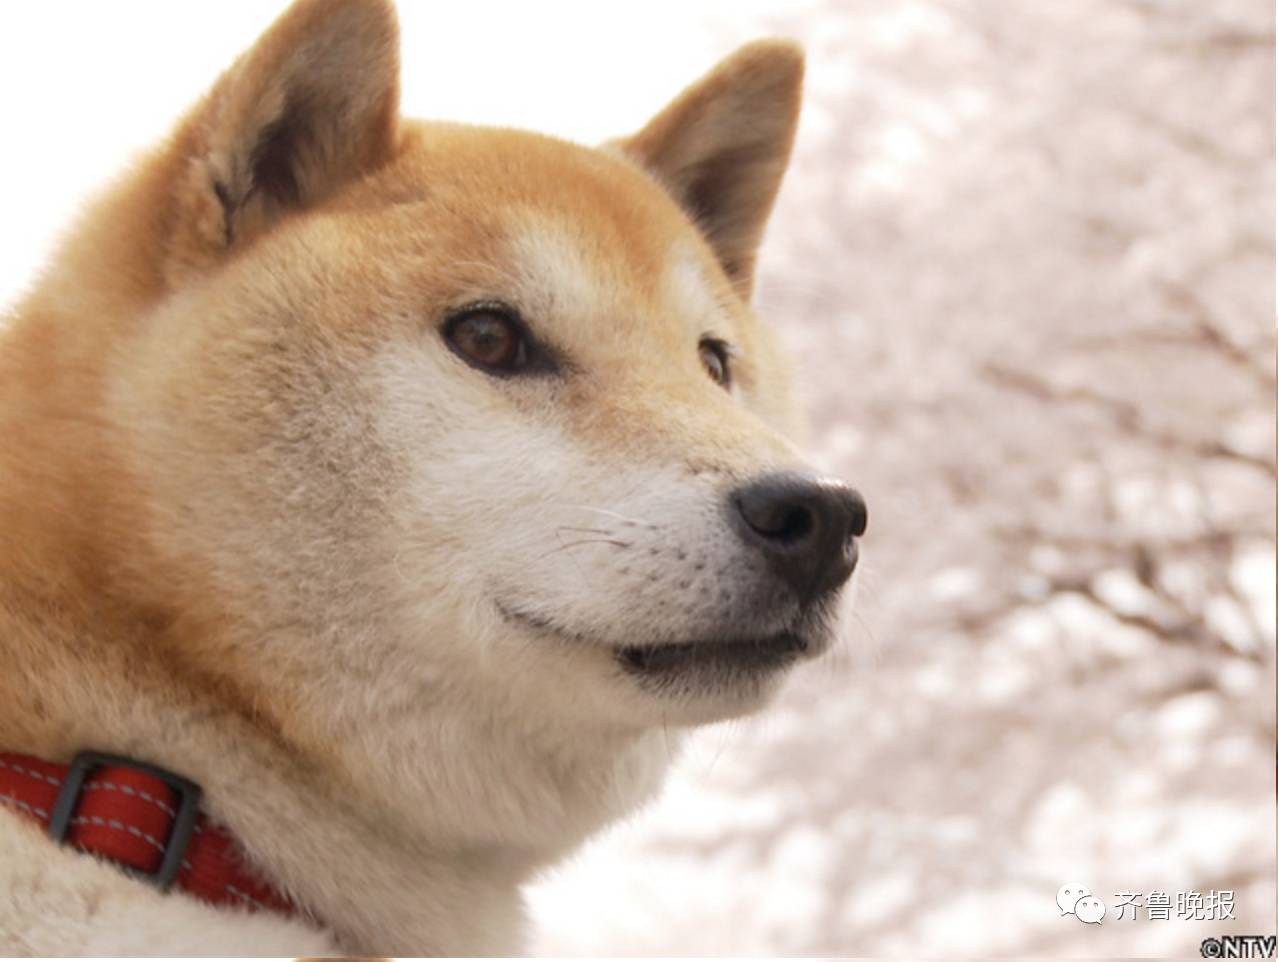 16岁表情包柴犬北登去世 日本网民集体哀悼